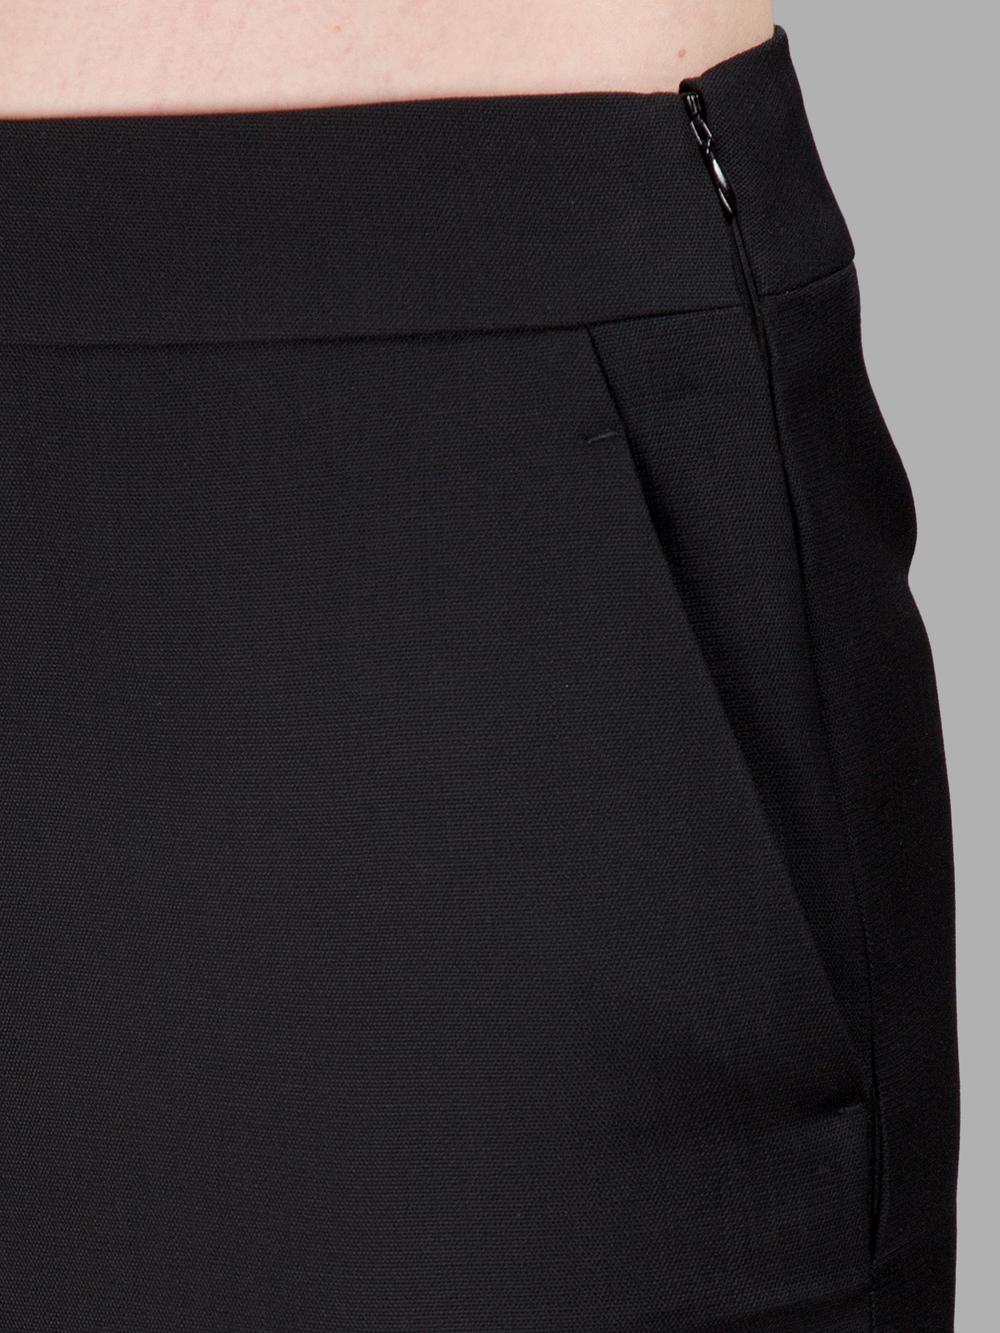 Haider Ackermann Black Cut Front Skirt | ModeSens